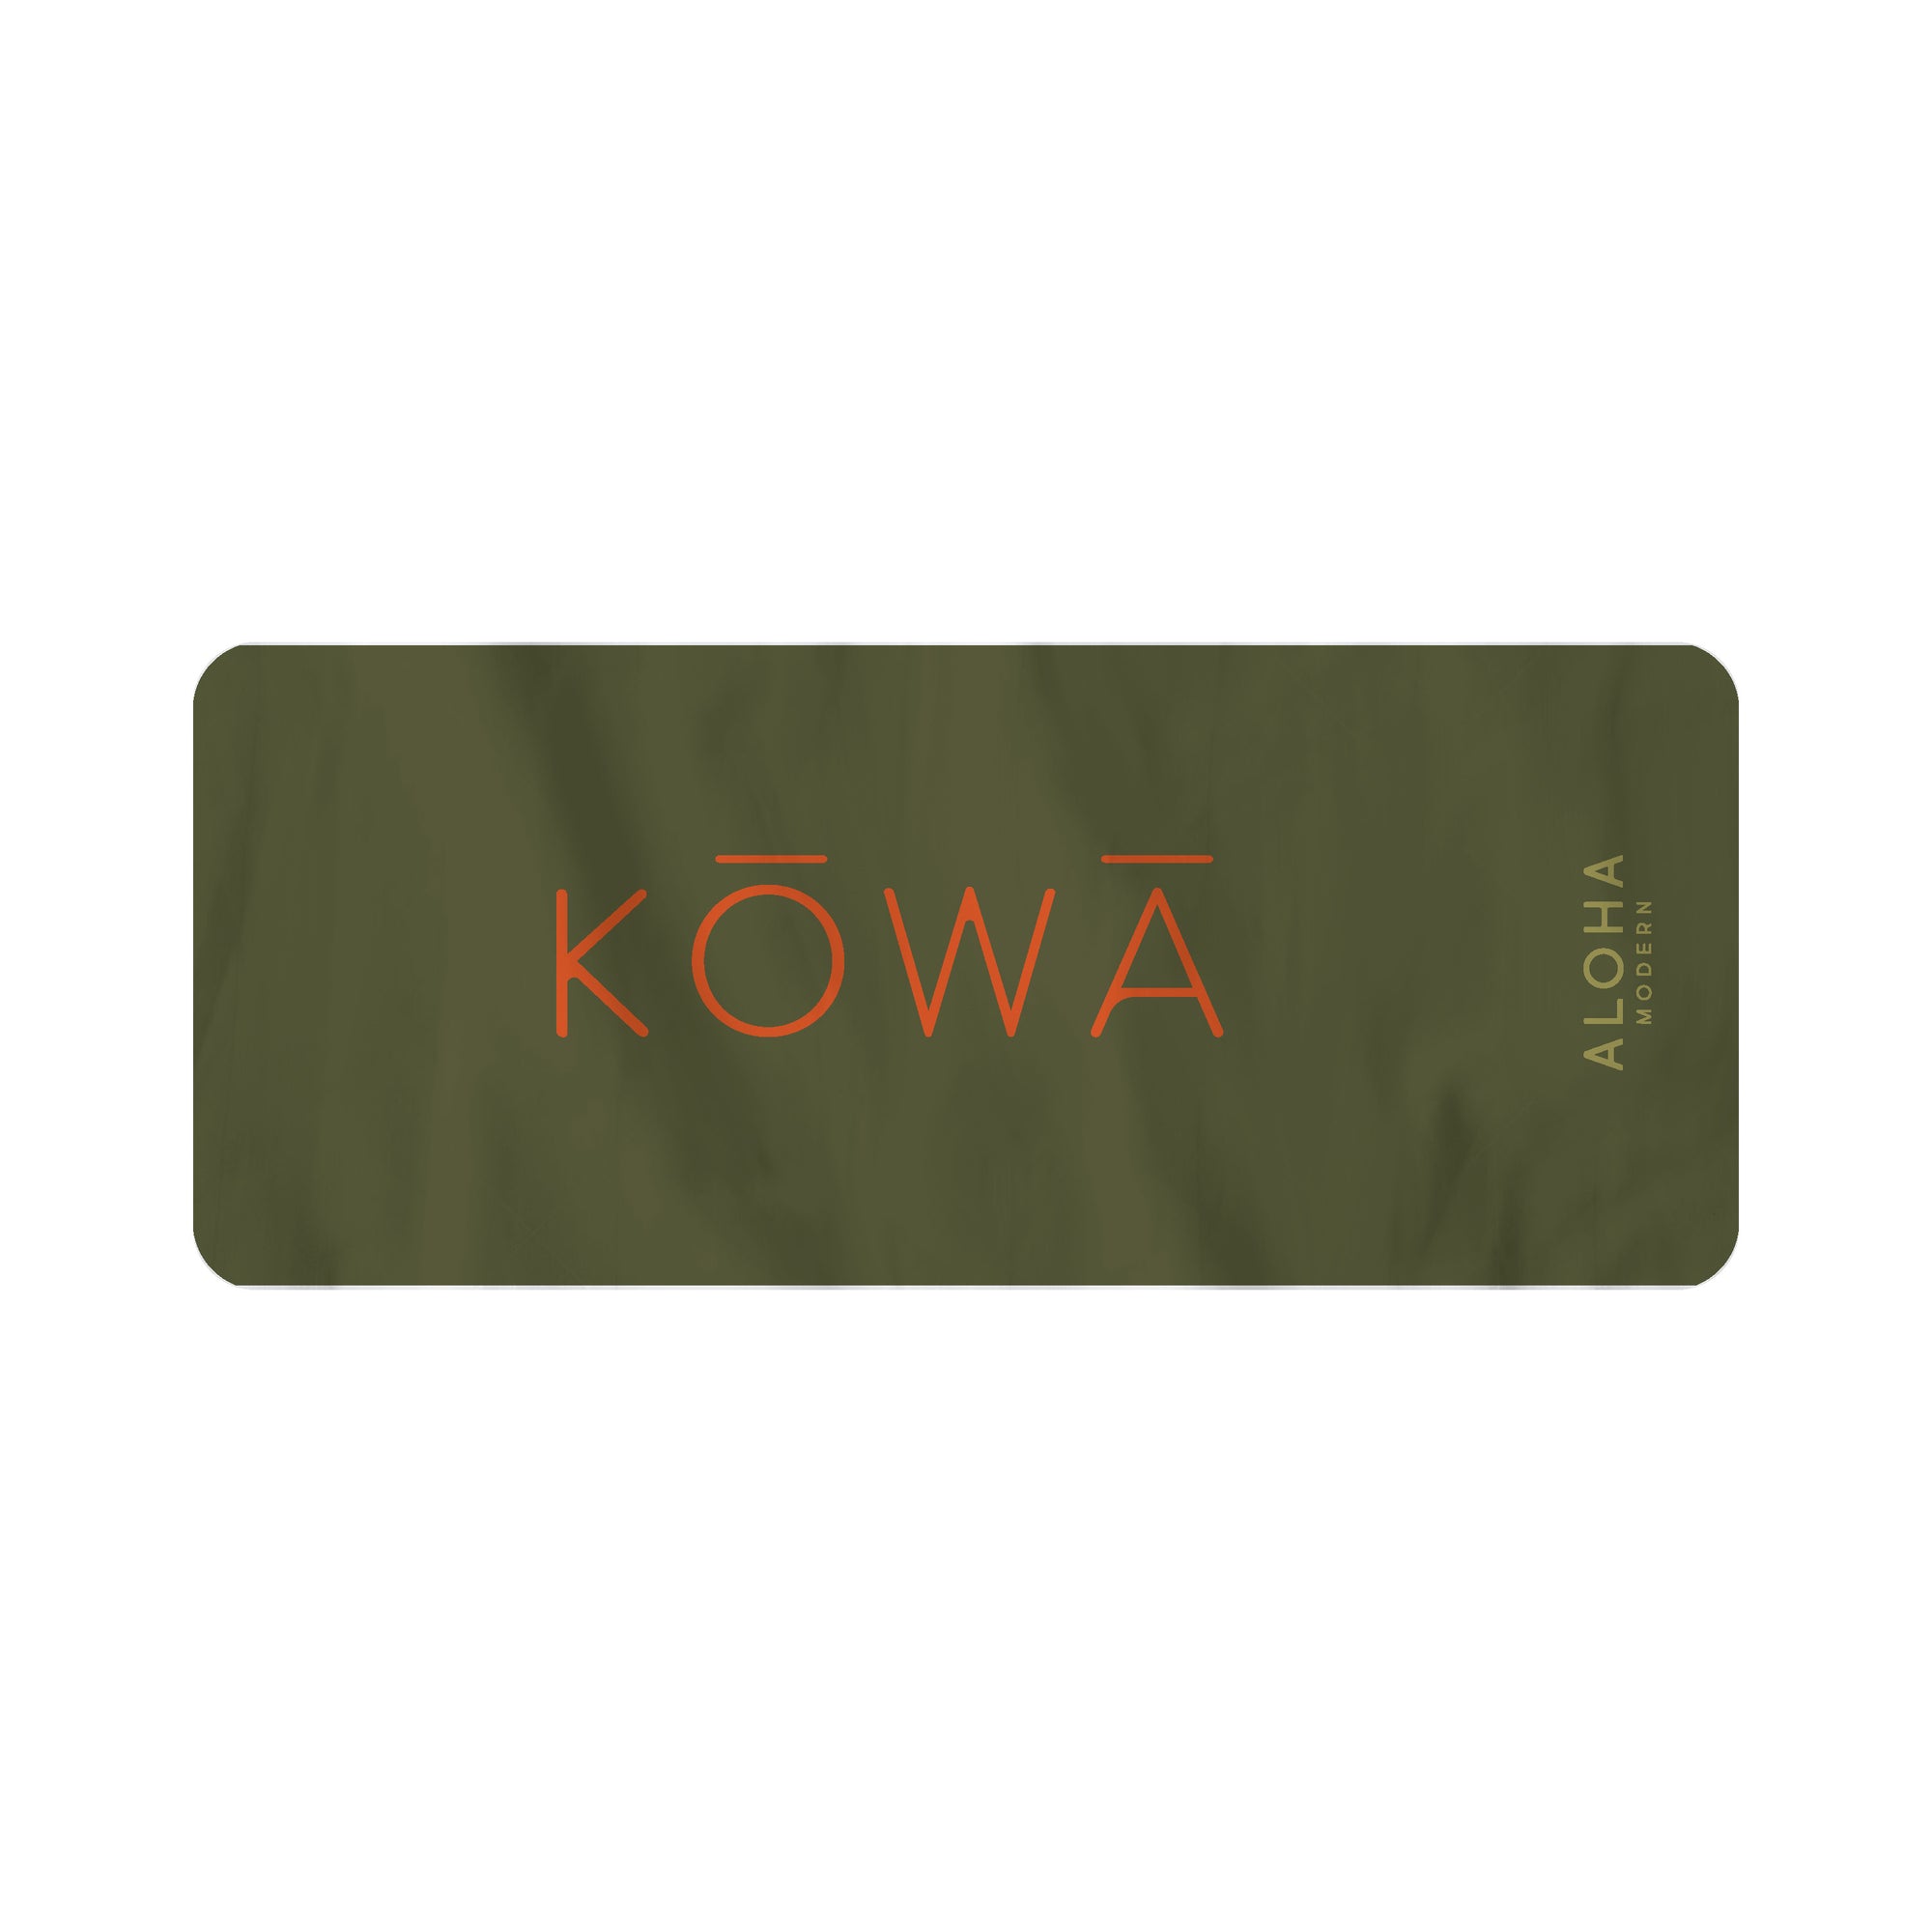 Pop-Up Mākeke - Aloha Modern - Kowa Sport Towel - Back View